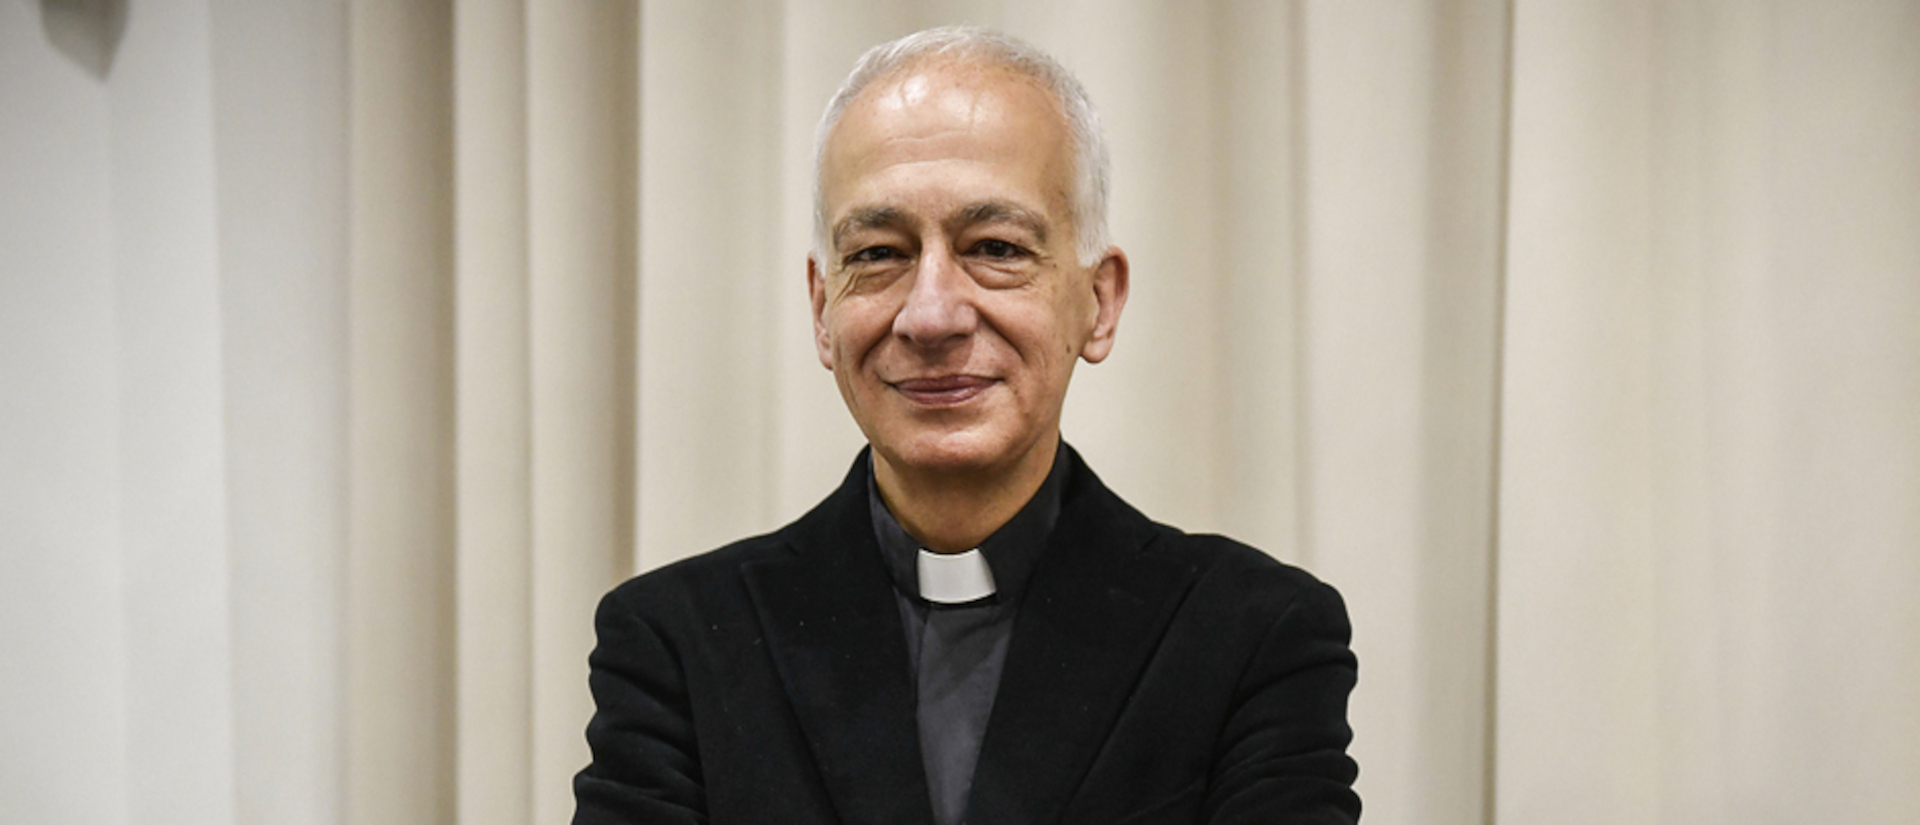 Michael Landau, Präsident von Caritas Österreich und Caritas Europa in der Hilfsorganisation Caritas Internationalis, am 22. November 2022 in Rom.